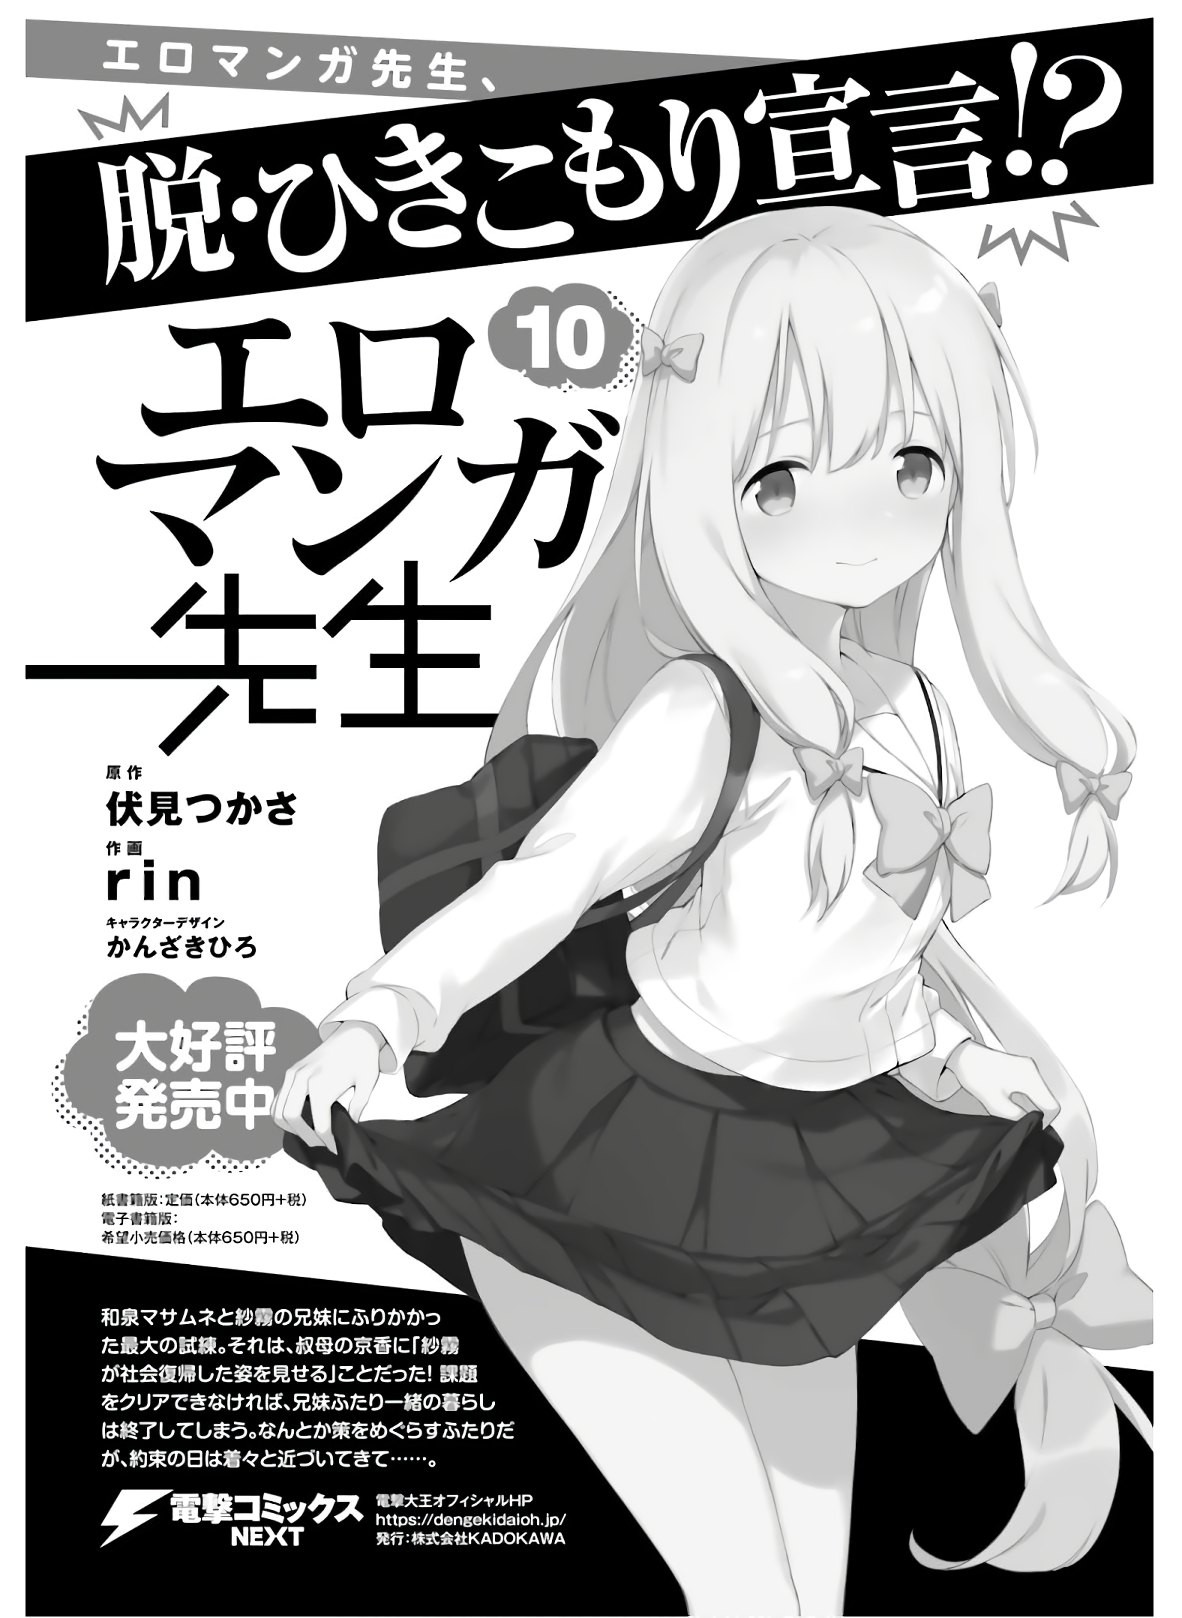 Ero Manga Sensei - Chapter 69 - Page 1